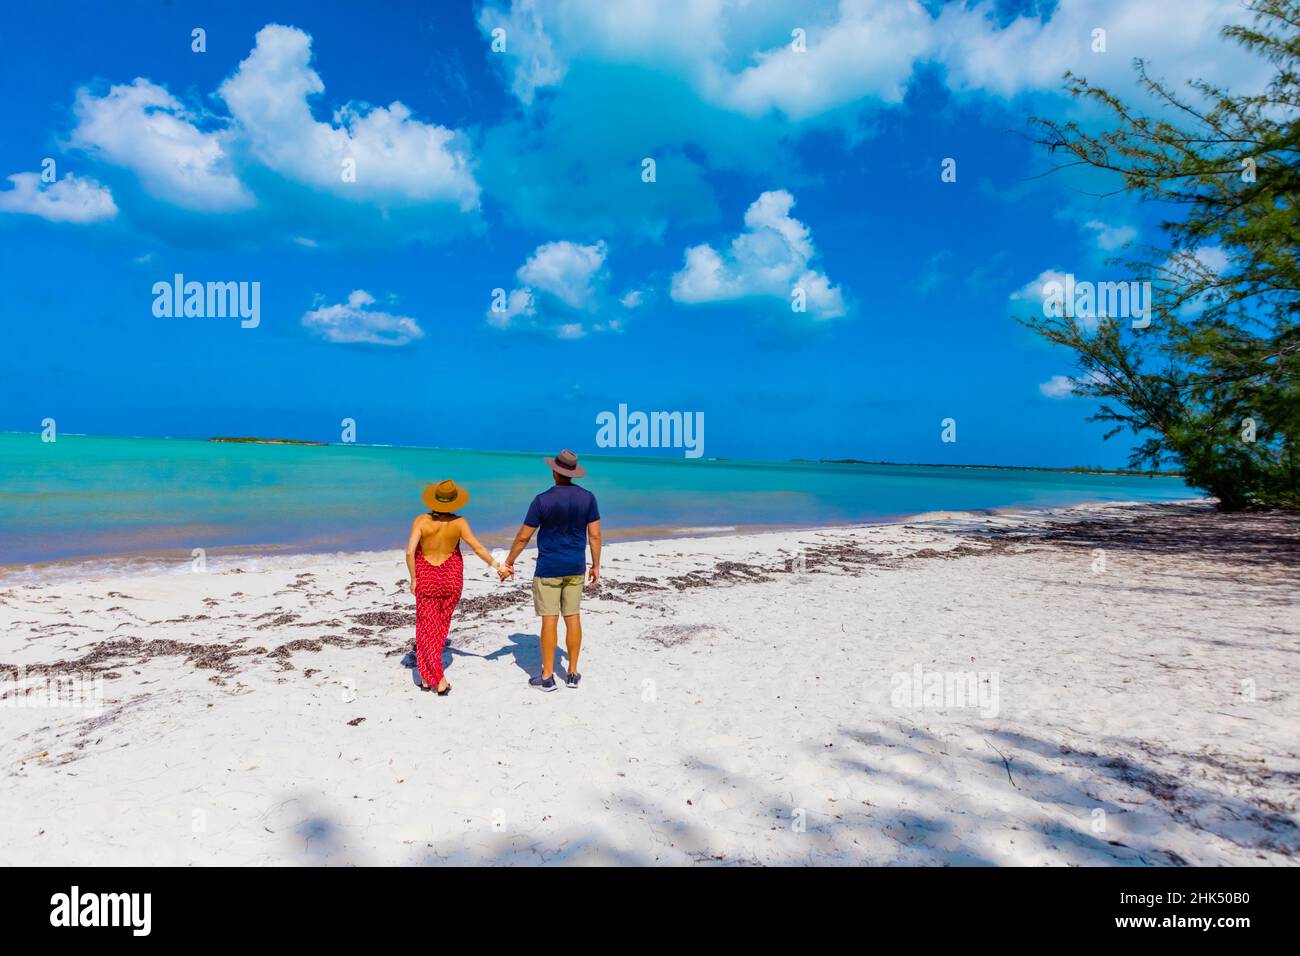 Couple appréciant le sable blanc et la vue épique sur l'océan de Horse stable Beach, North Caicos, Turks and Caicos Islands, Atlantic, Central America Banque D'Images